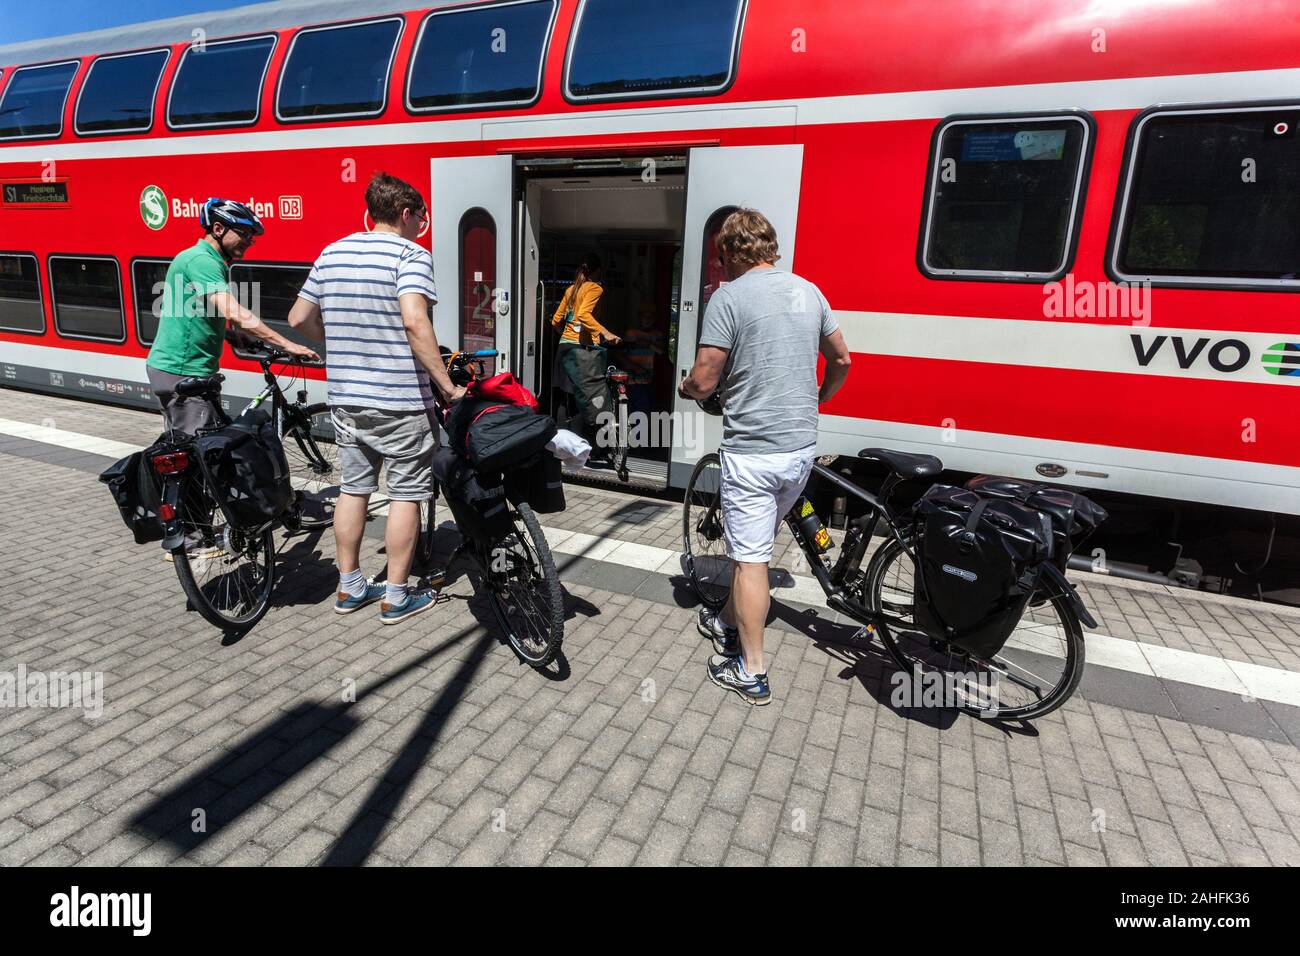 Alemania viaje en bicicleta por tren, el grupo de gente en el andén ferroviario acaba de llegar en tren regional Deutsche Bahn Sajonia Foto de stock